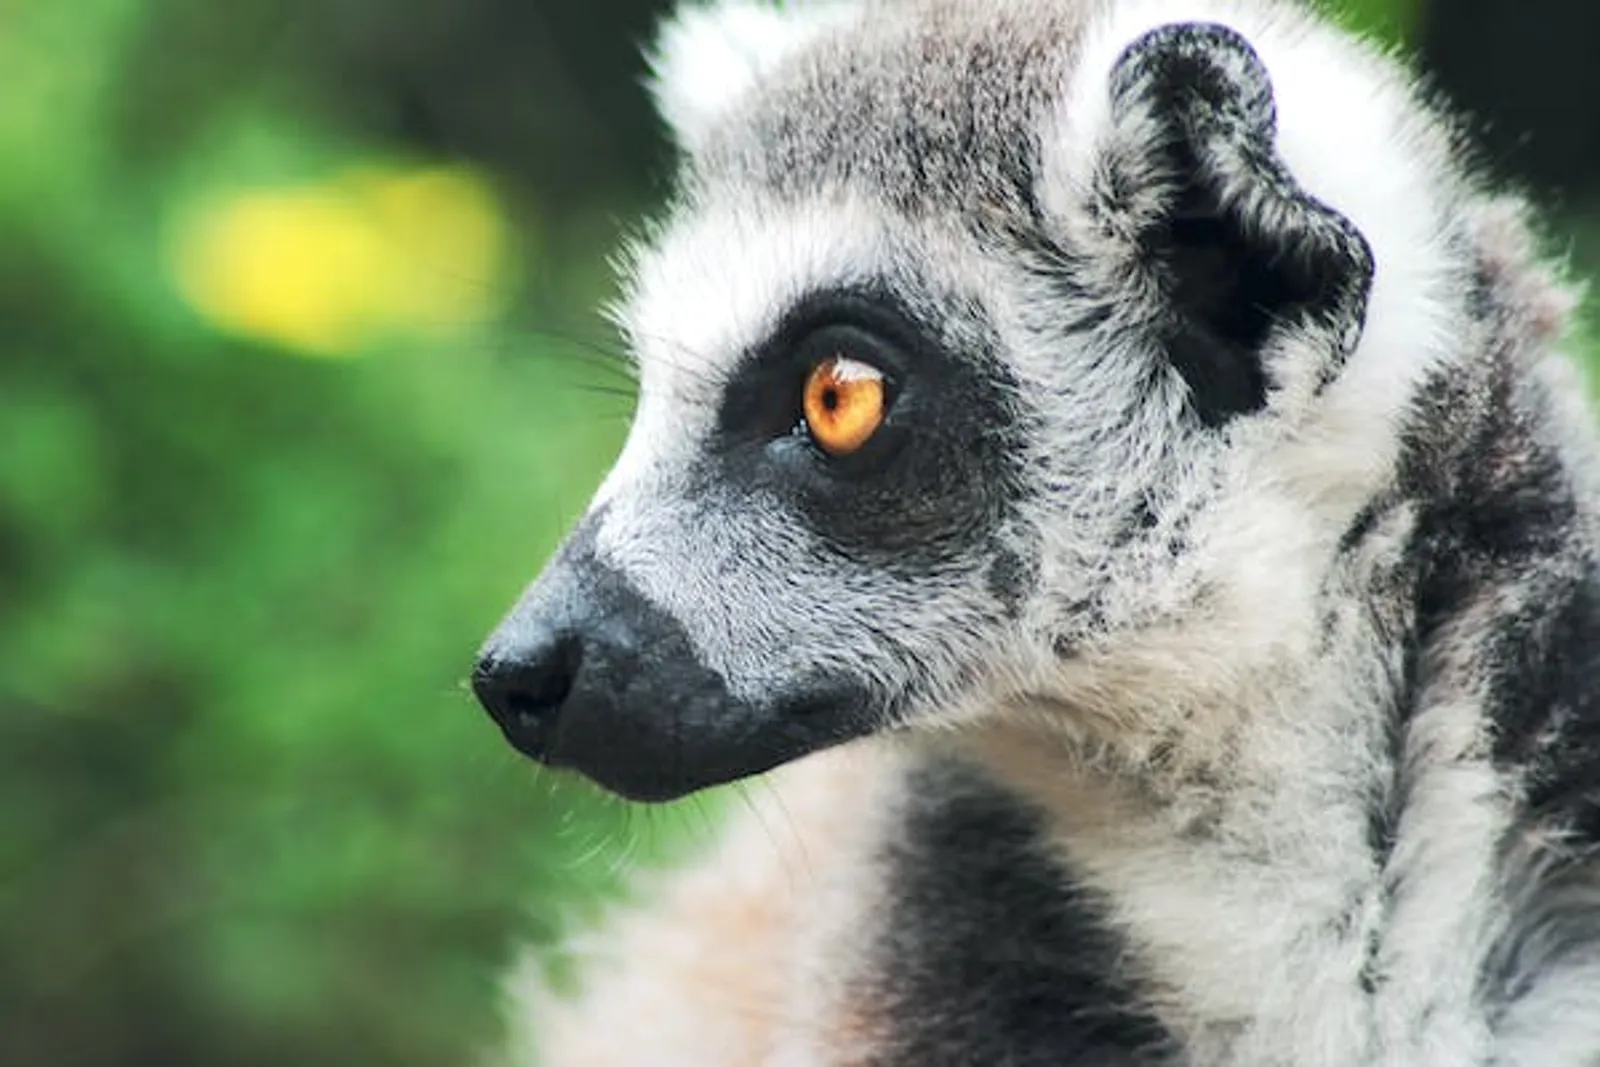 Elite Park Zoo Serang: Lokasi, Jam Buka, & Harga Tiket Masuk